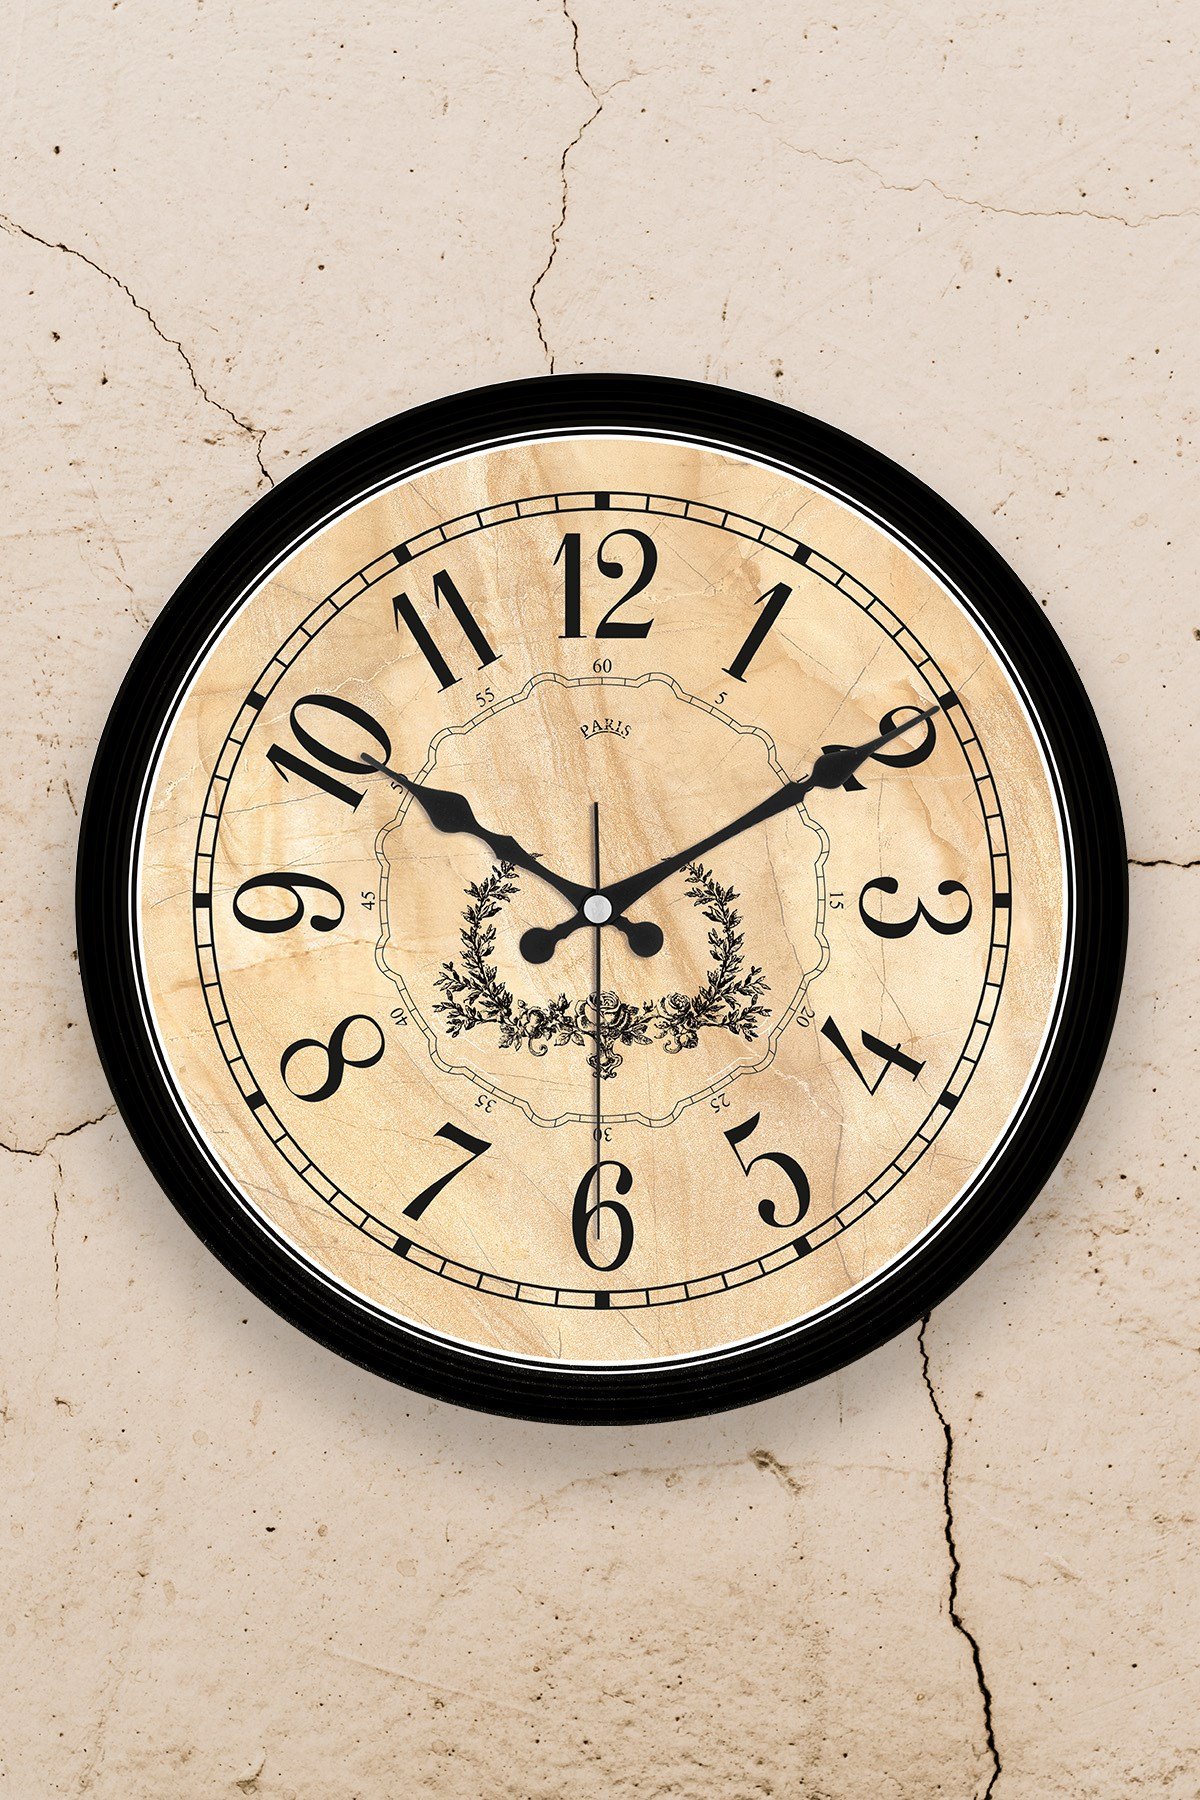 Gerçek Camlı Duvar Saatleri Fiyatları ve Daha Birçok Dekoratif Ürün |  MuyikaDesign